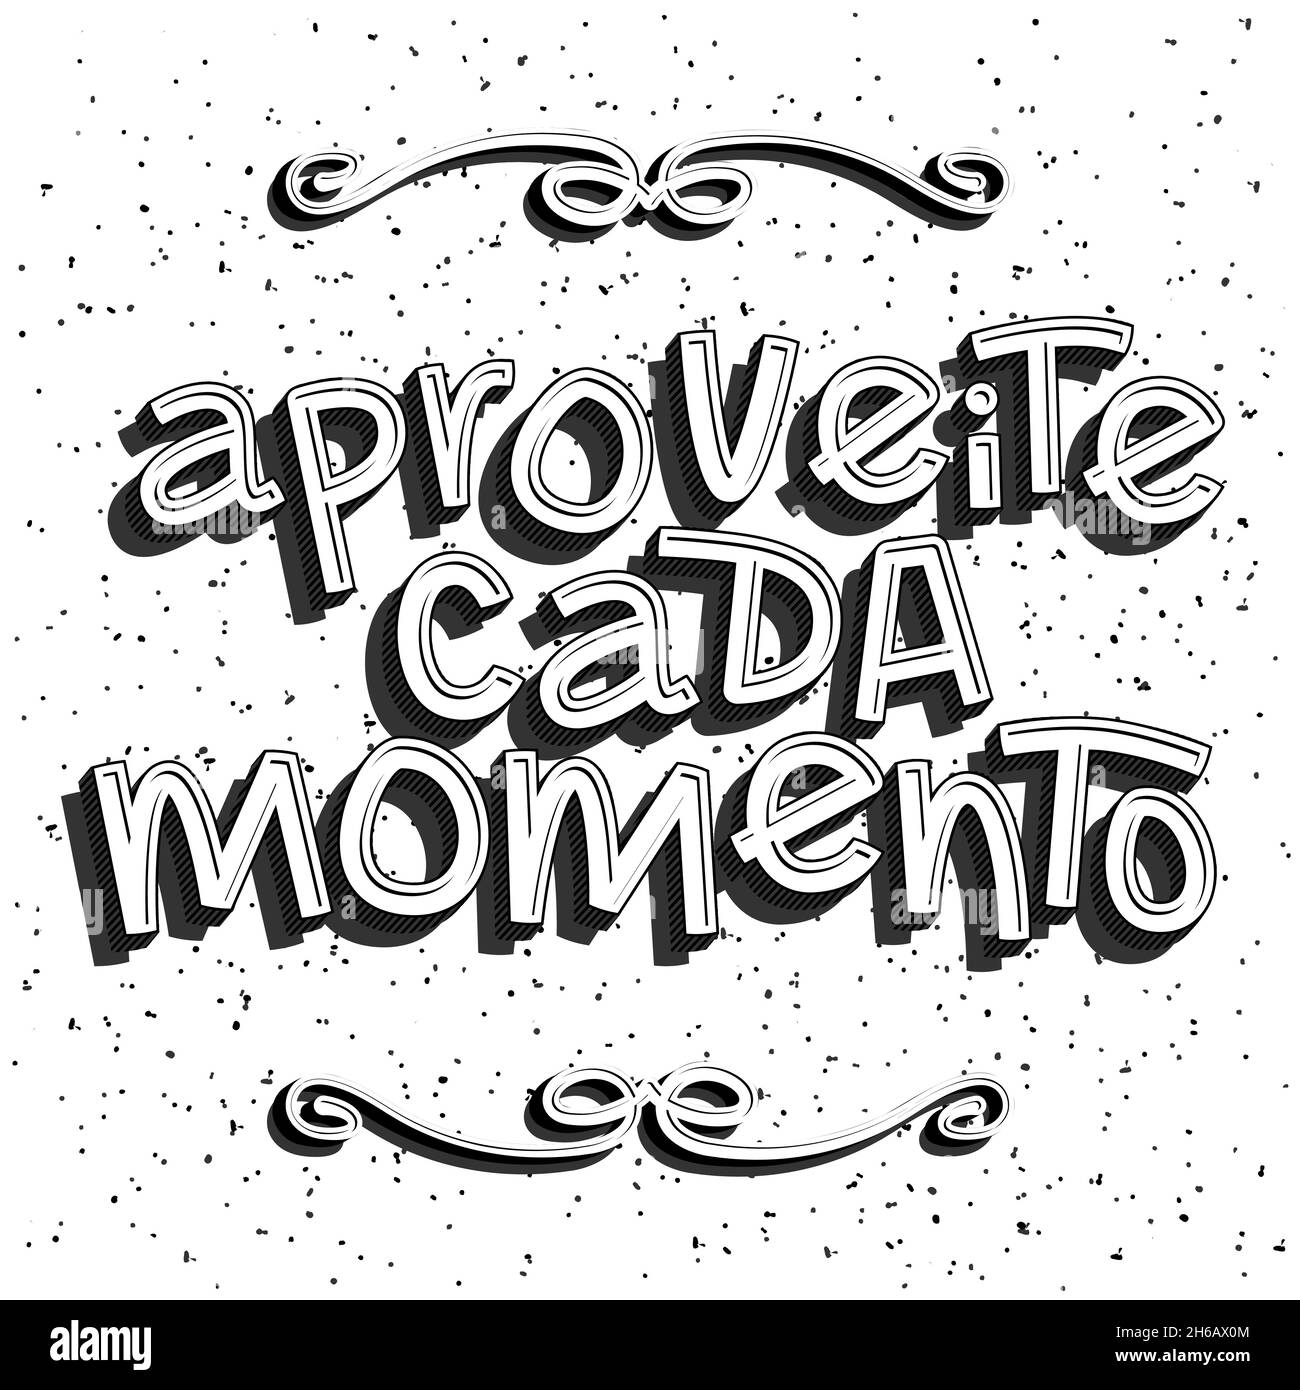 Poster vintage in bianco e nero in portoghese brasiliano. Traduzione:  "Godetevi ogni momento Immagine e Vettoriale - Alamy